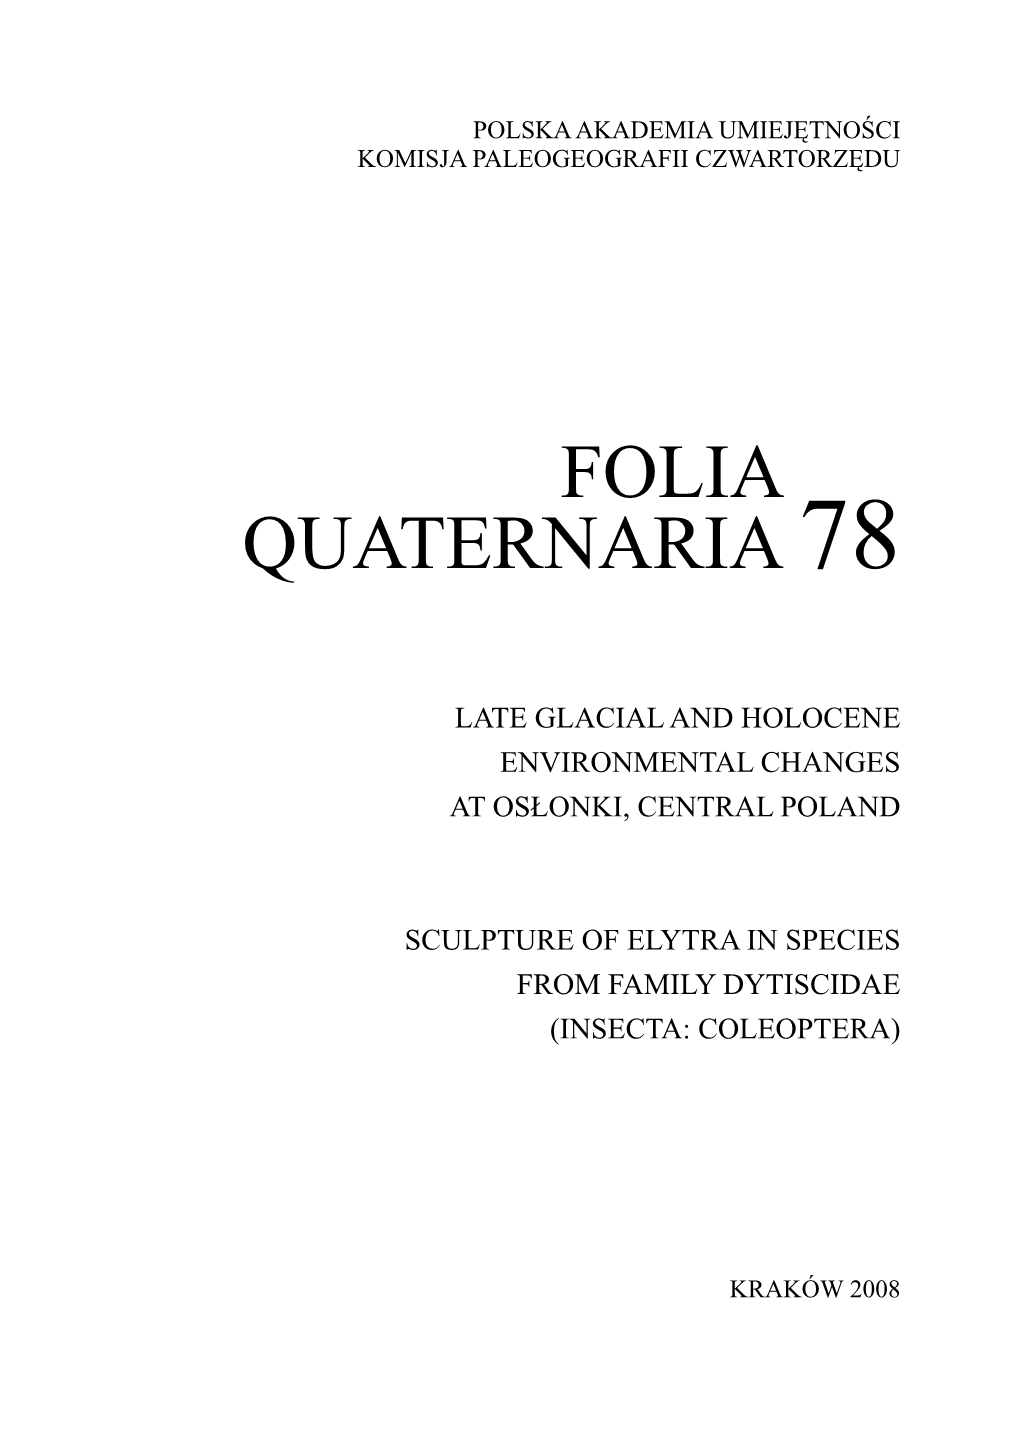 Folia Quaternaria 78